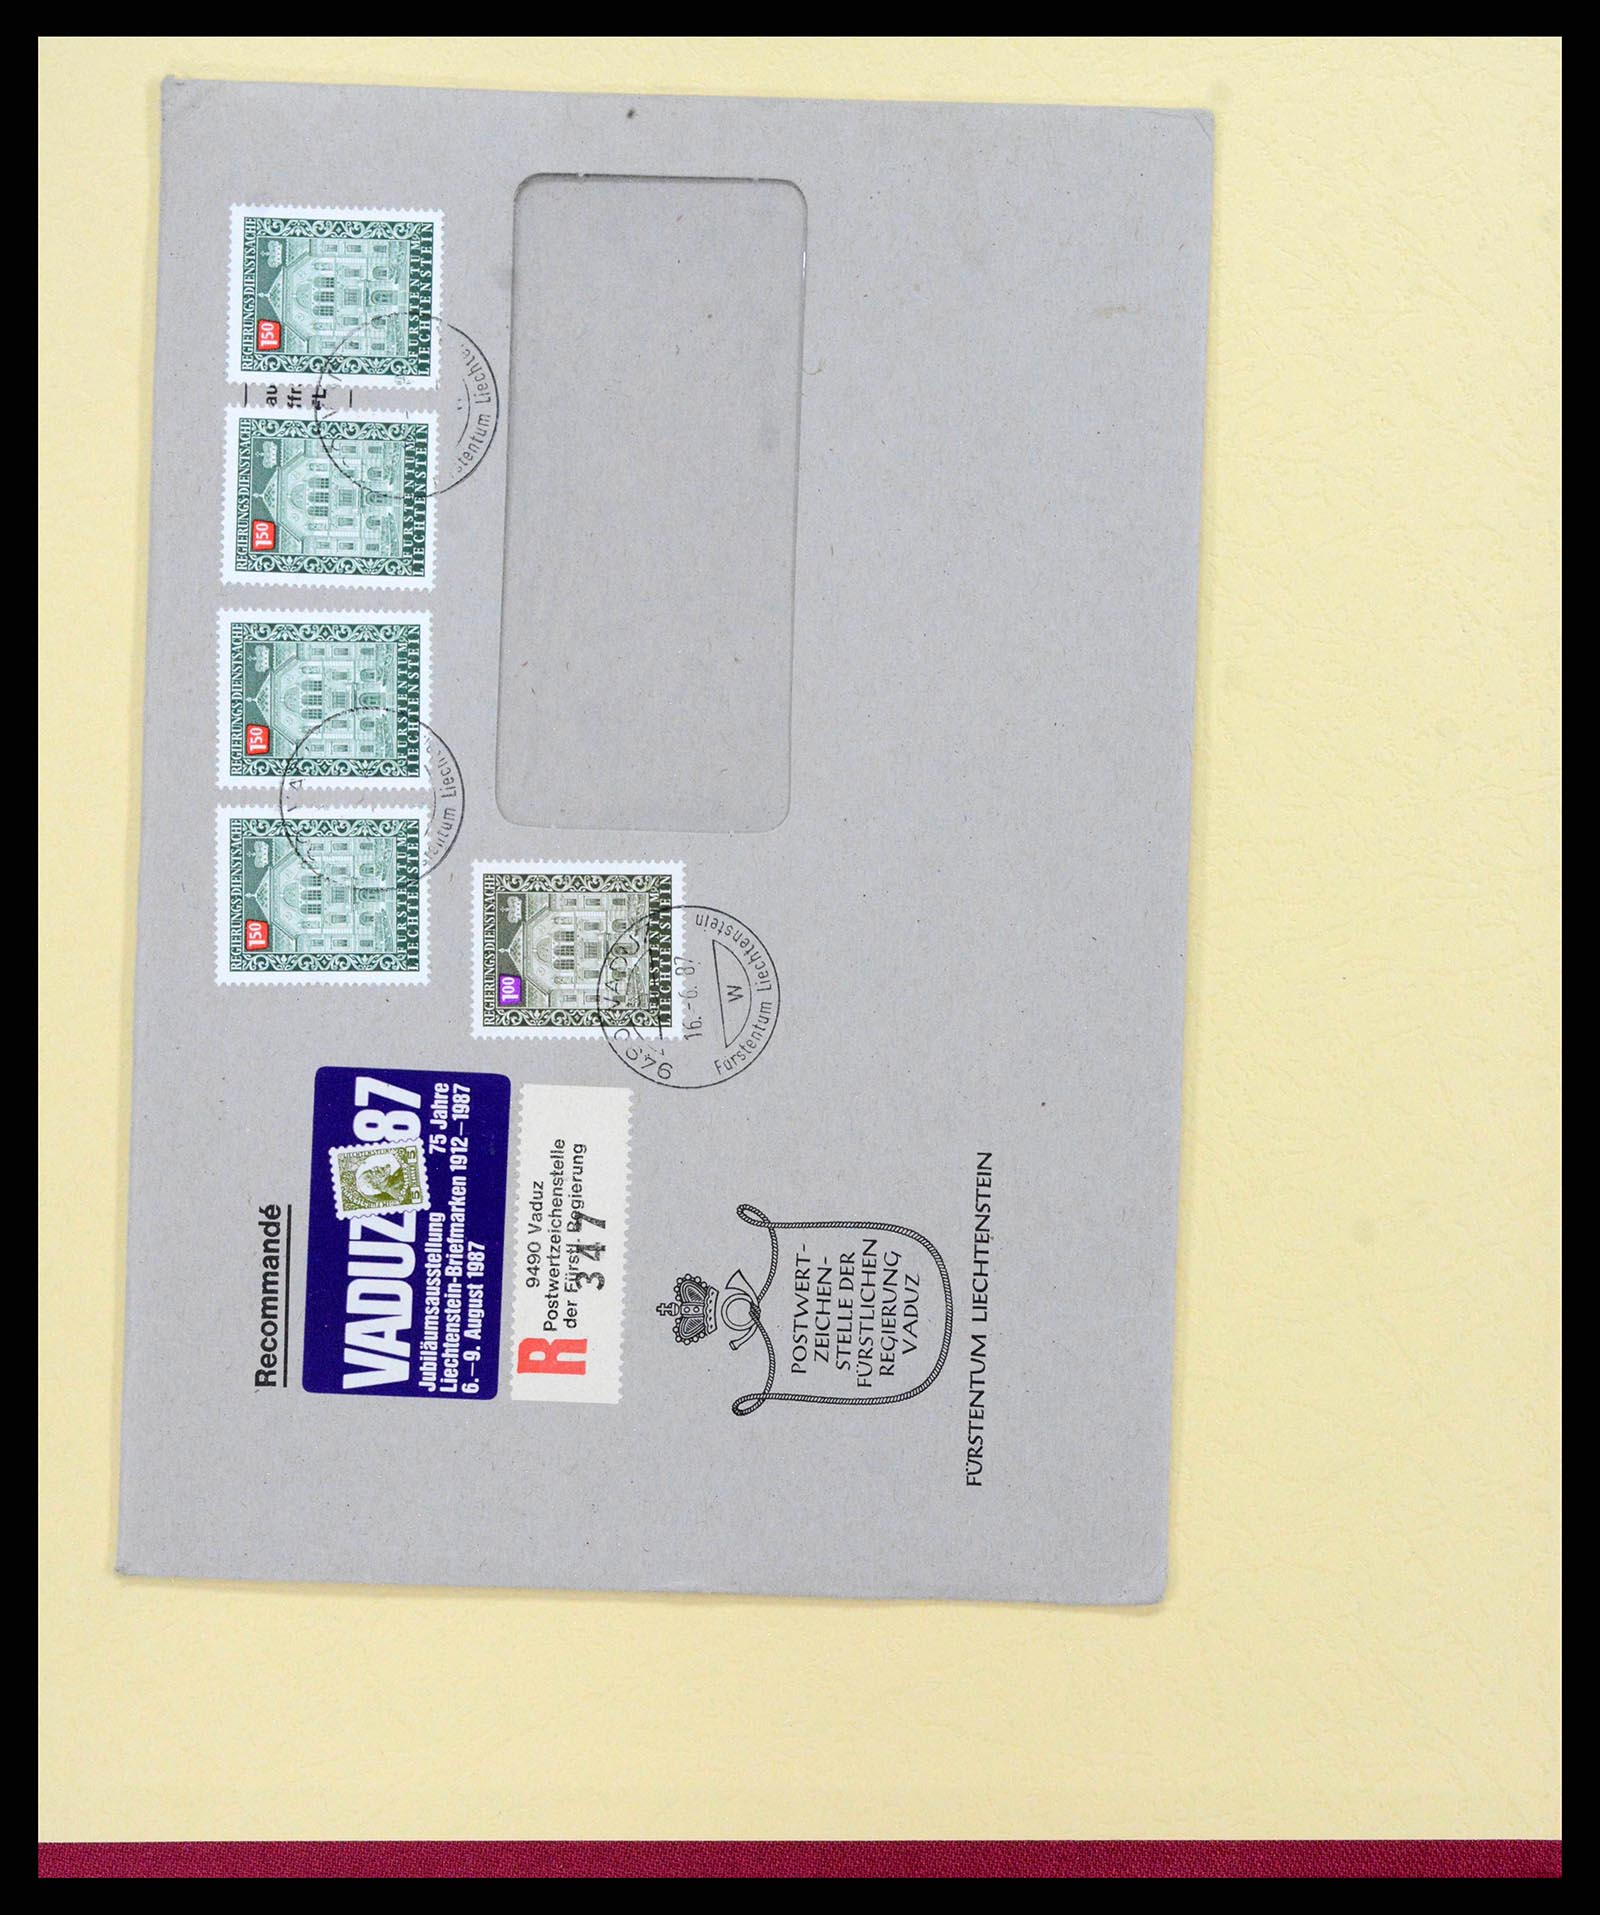 38204 0060 - Stamp collection 38204 Liechtenstein service covers 1932-1989.